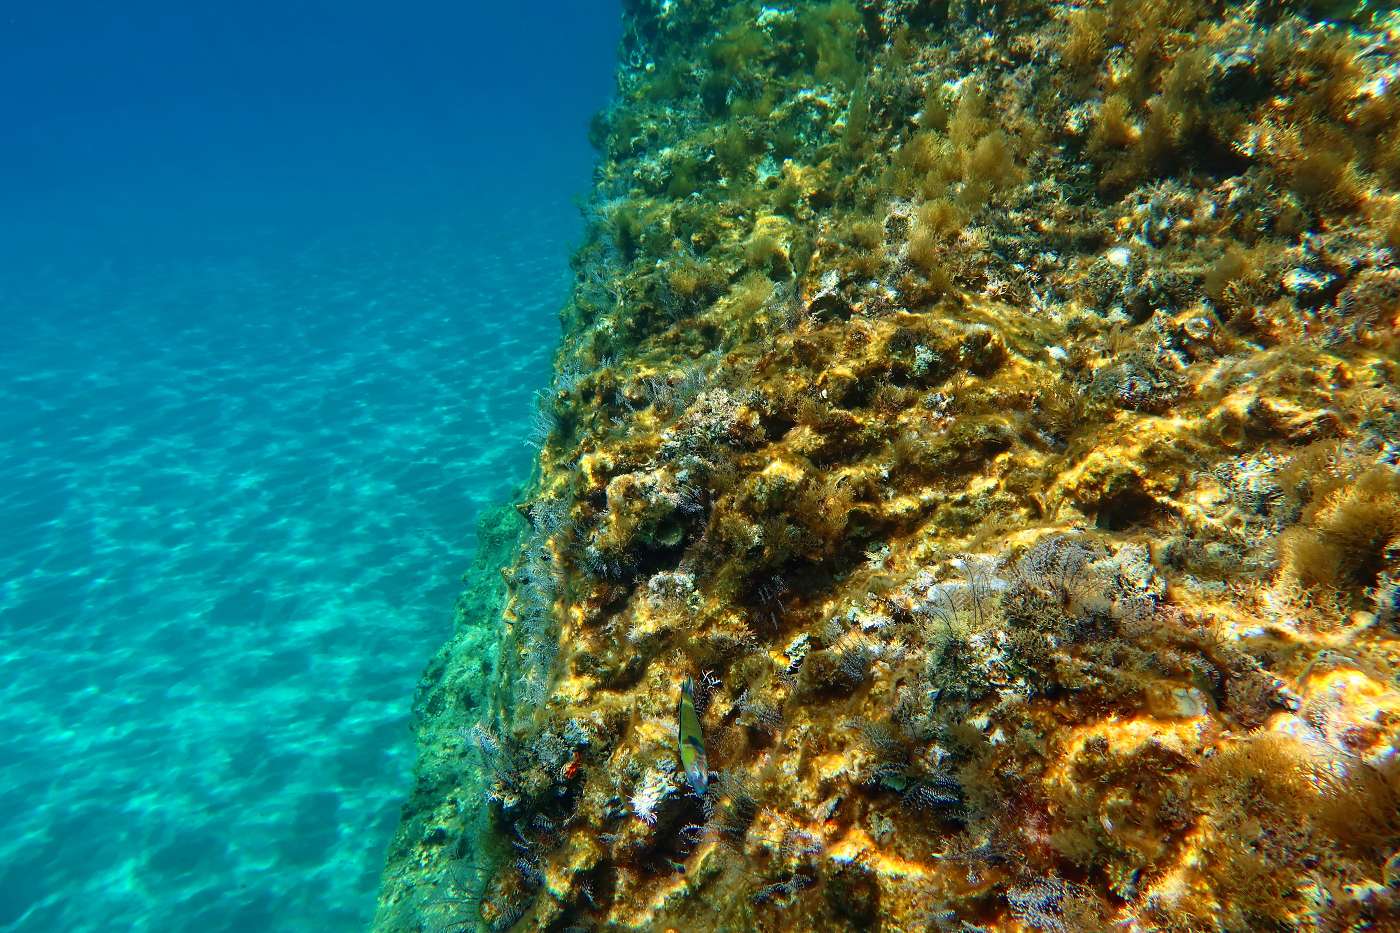 Rhodos - typická krajina pod vodou a ryba kněžík.